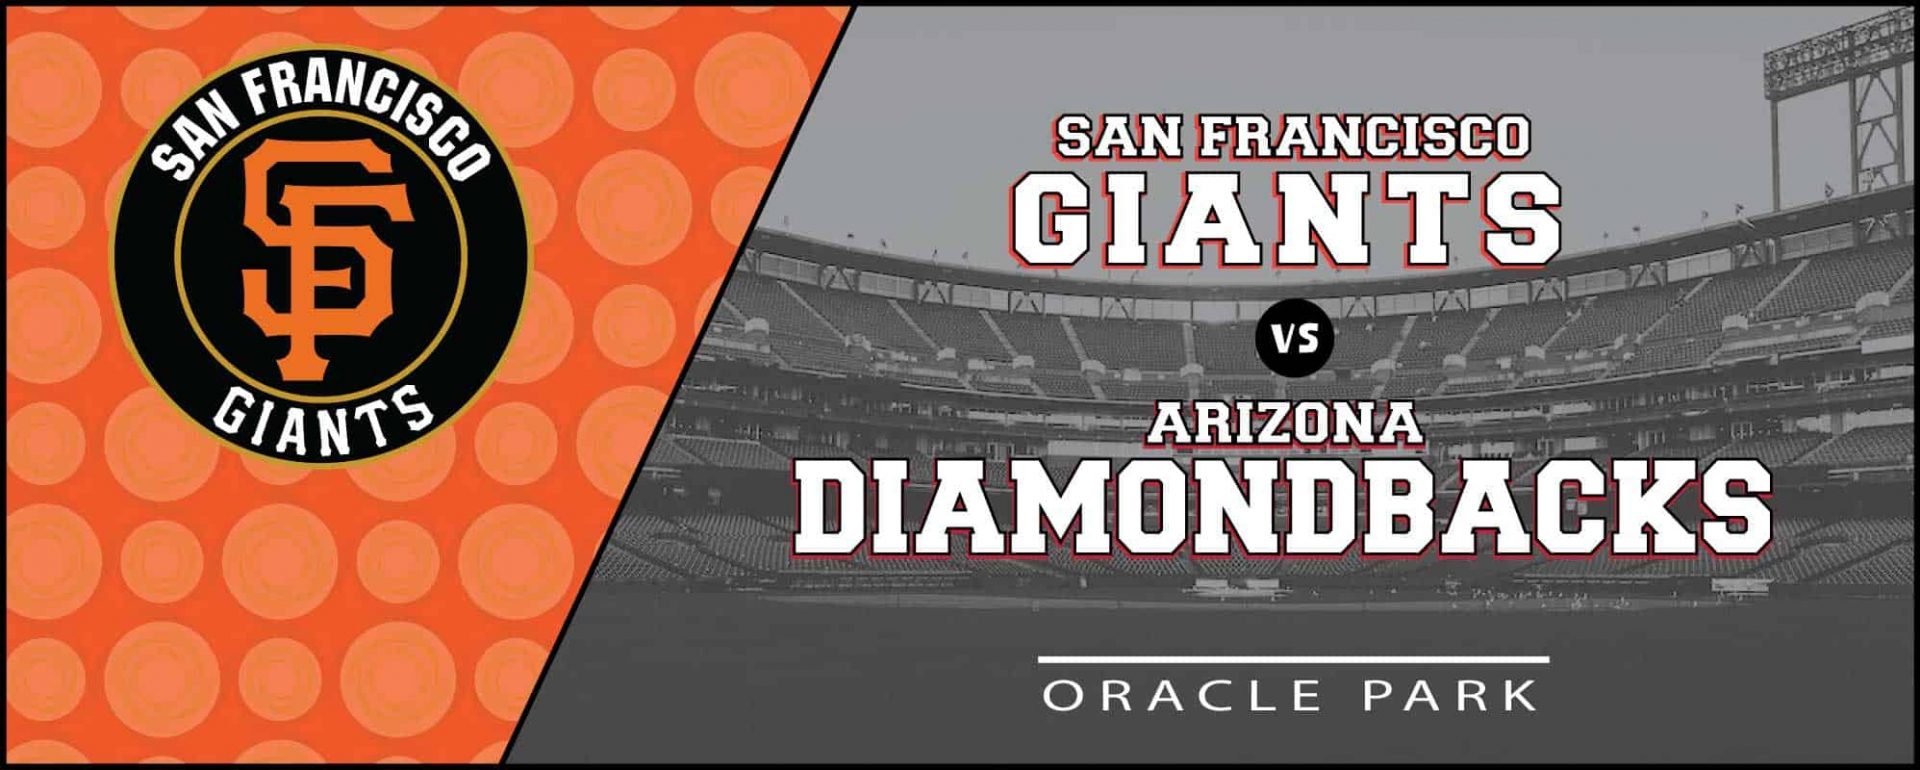 San Francisco Giants vs. Arizona Diamondbacks